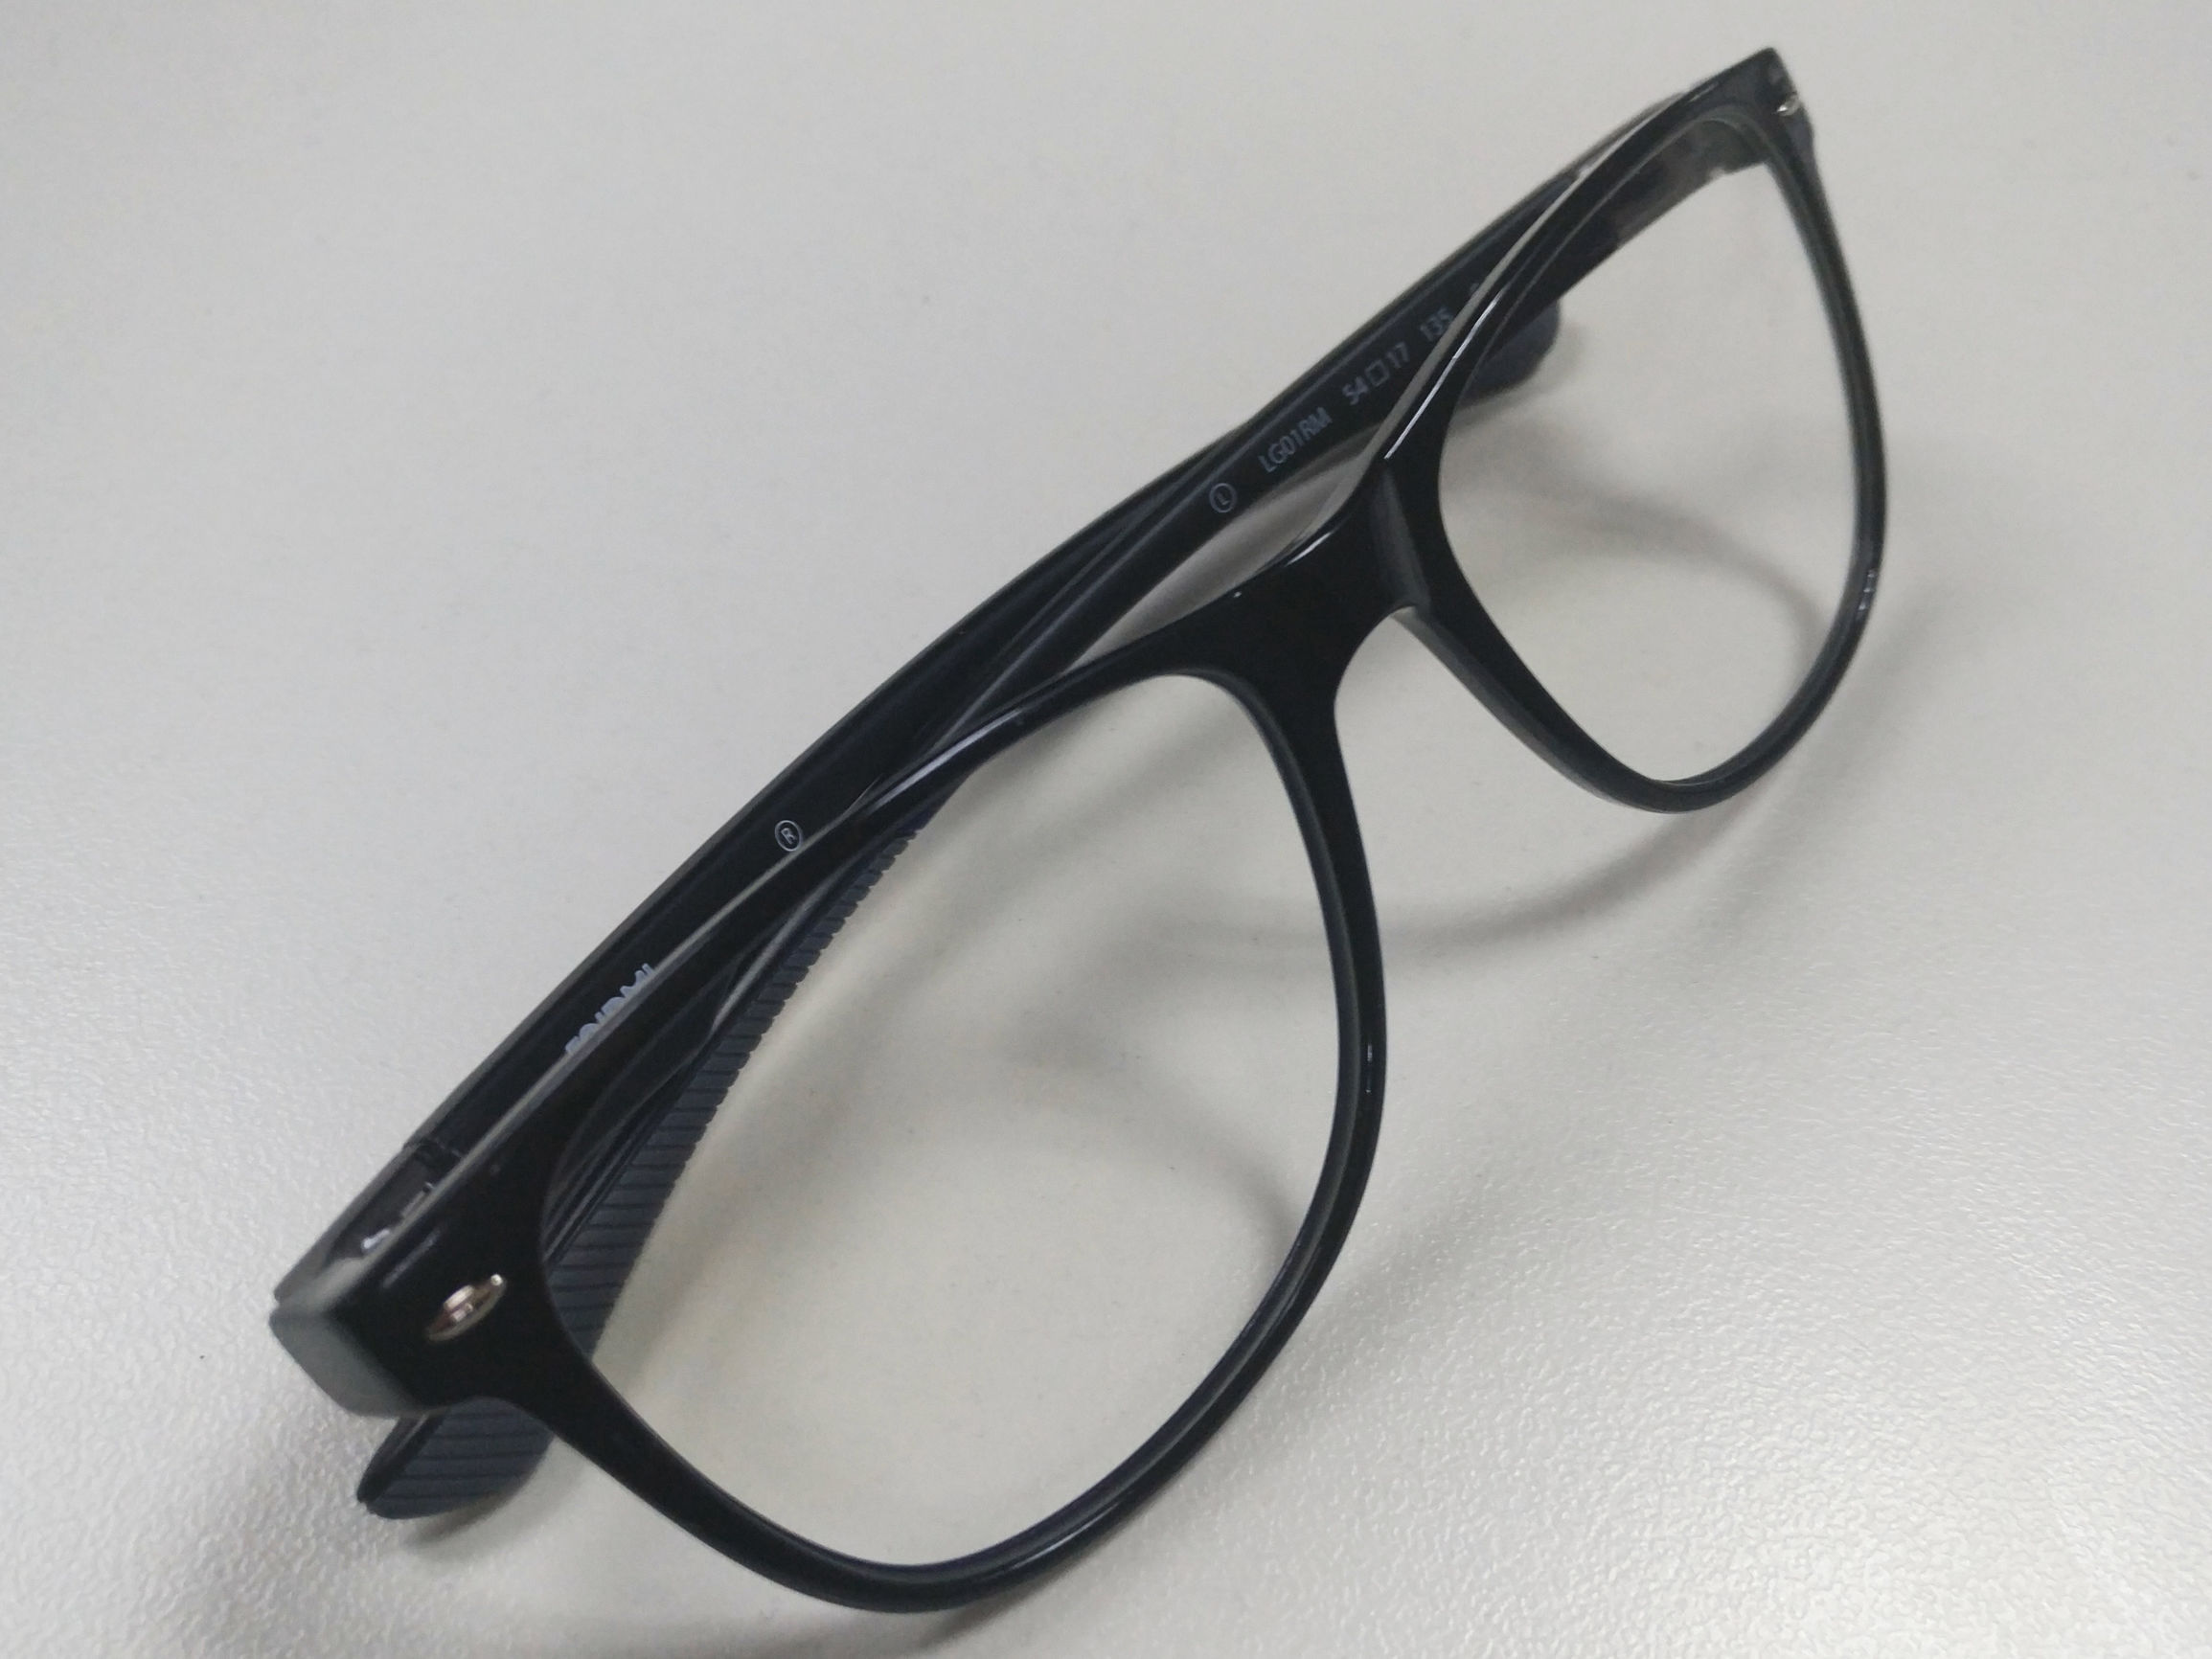 年轻人的第一款眼镜 小米防蓝光B1护目眼镜图